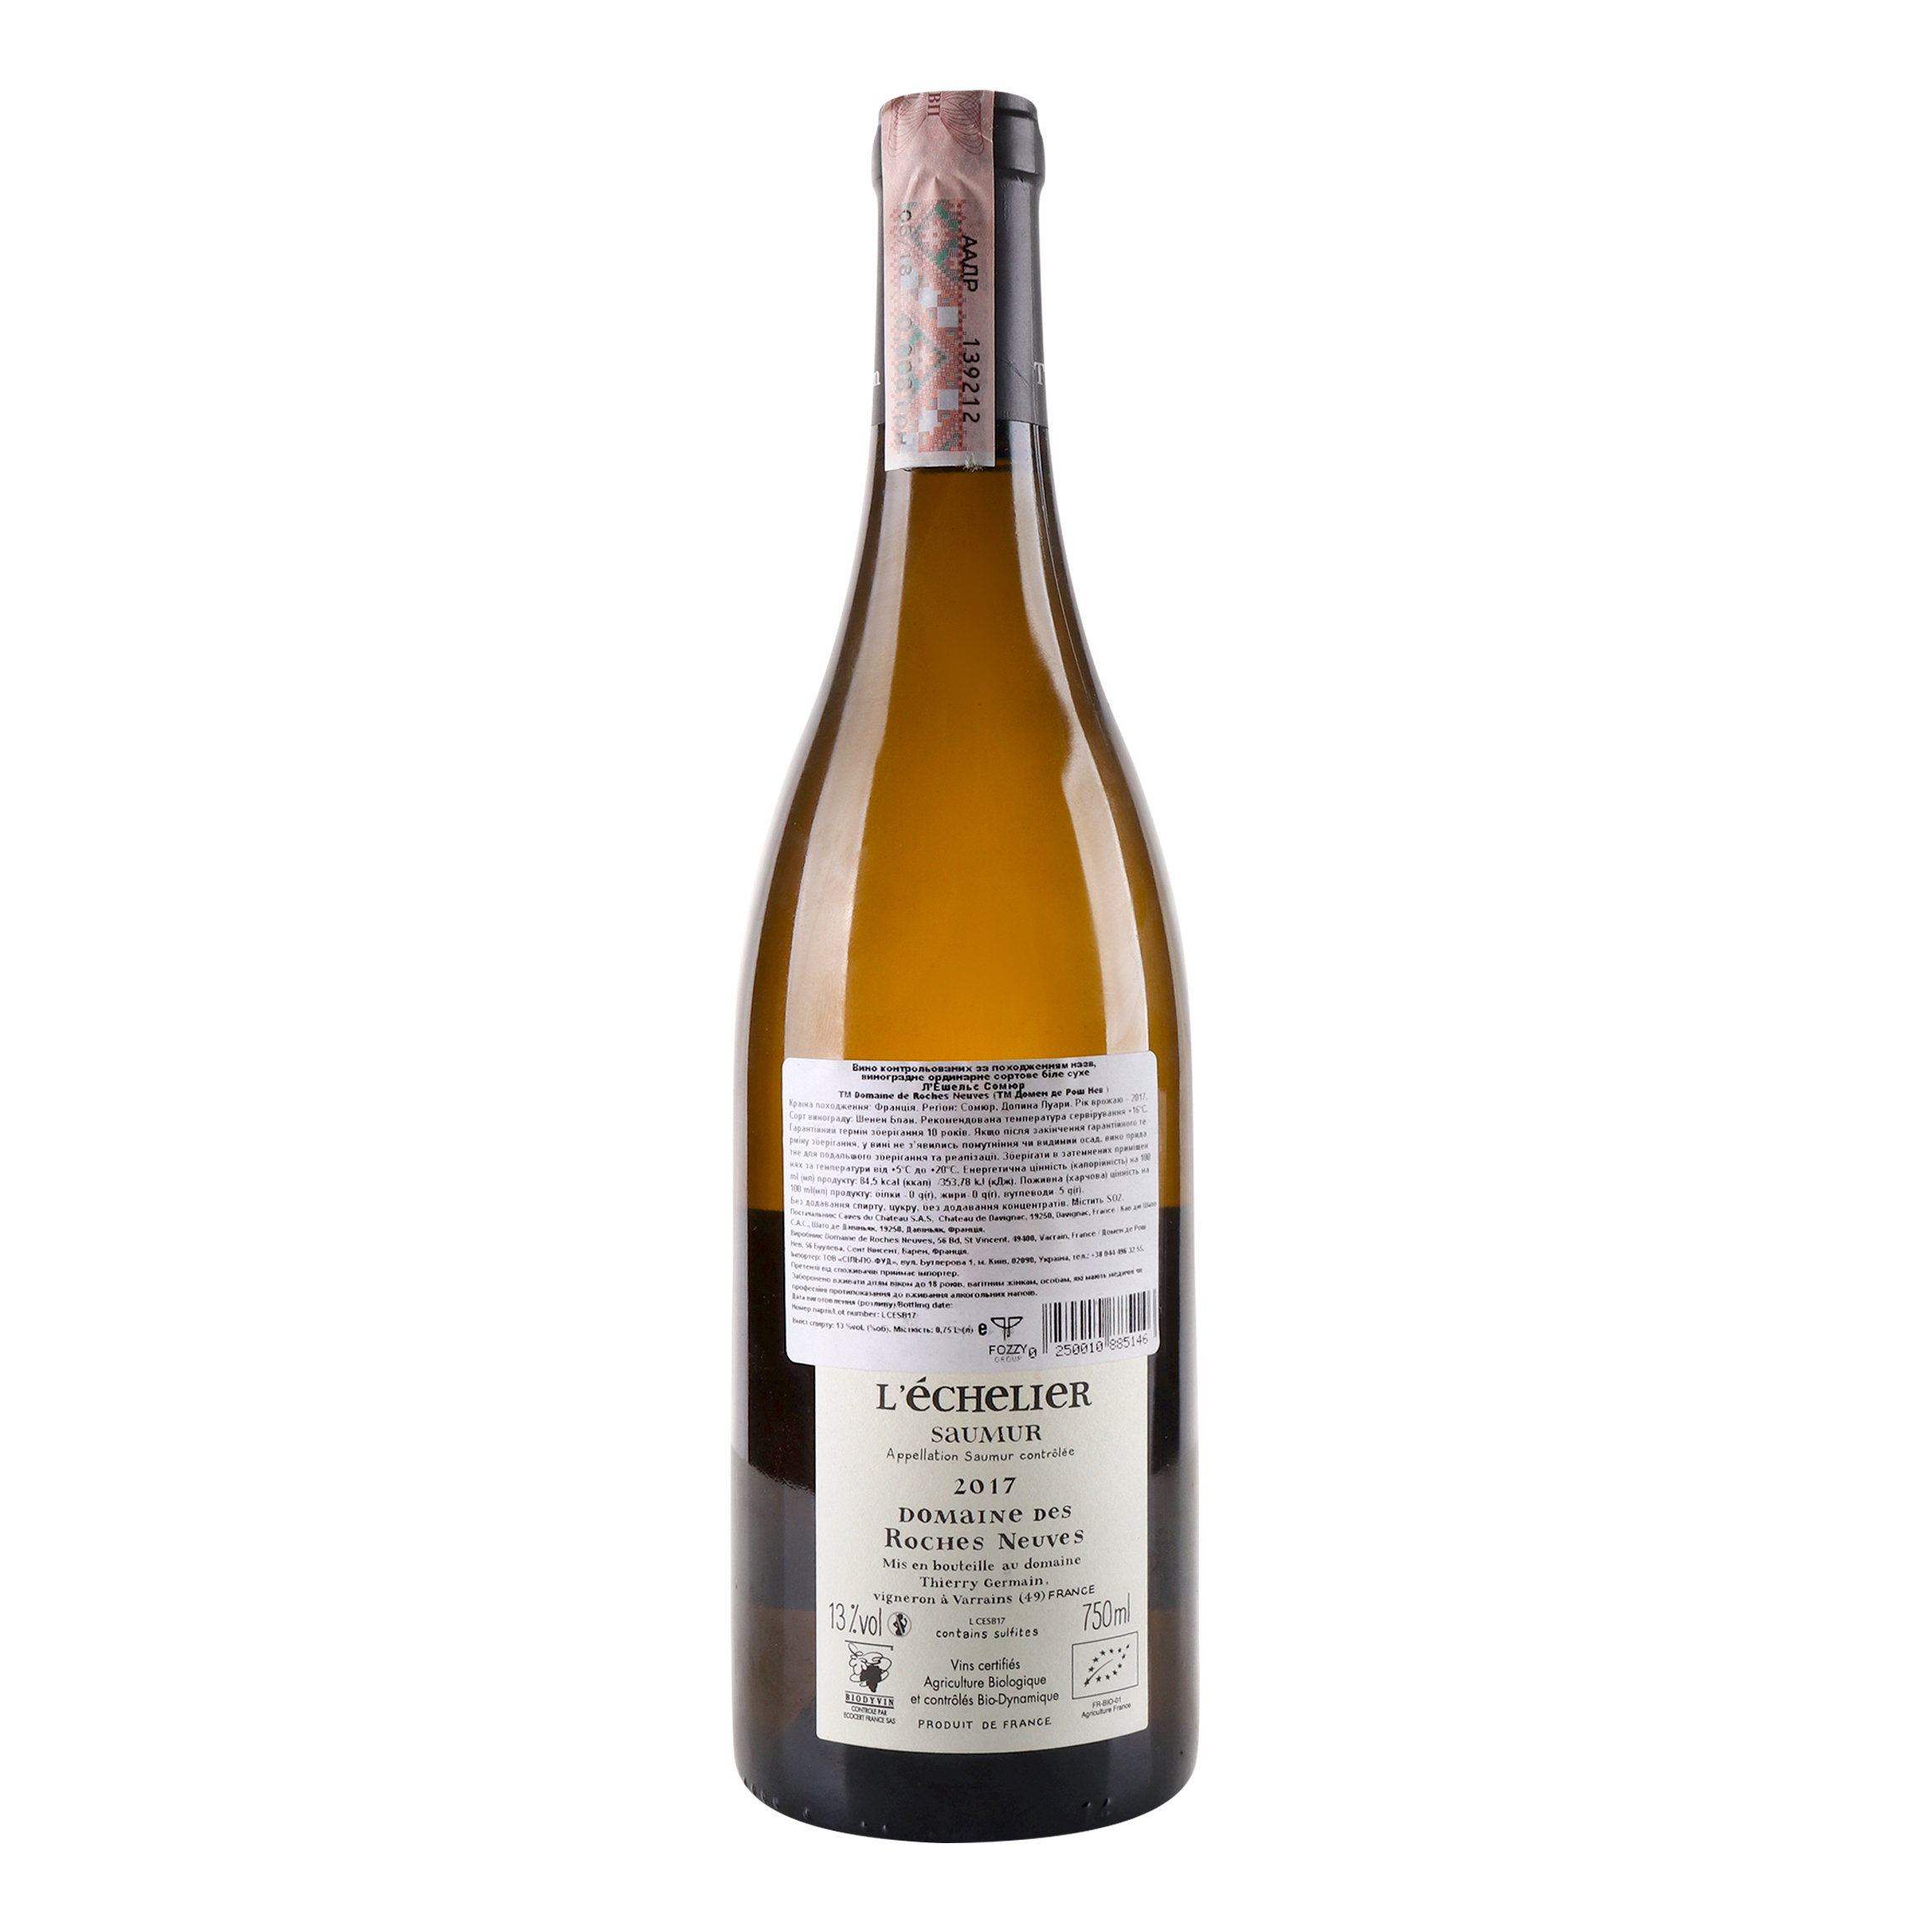 Вино Thierry Germain Domaine de Roches Neuves Saumur L’Echelier 2017 АОС/AOP, 13%, 0,75 л (766677) - фото 3